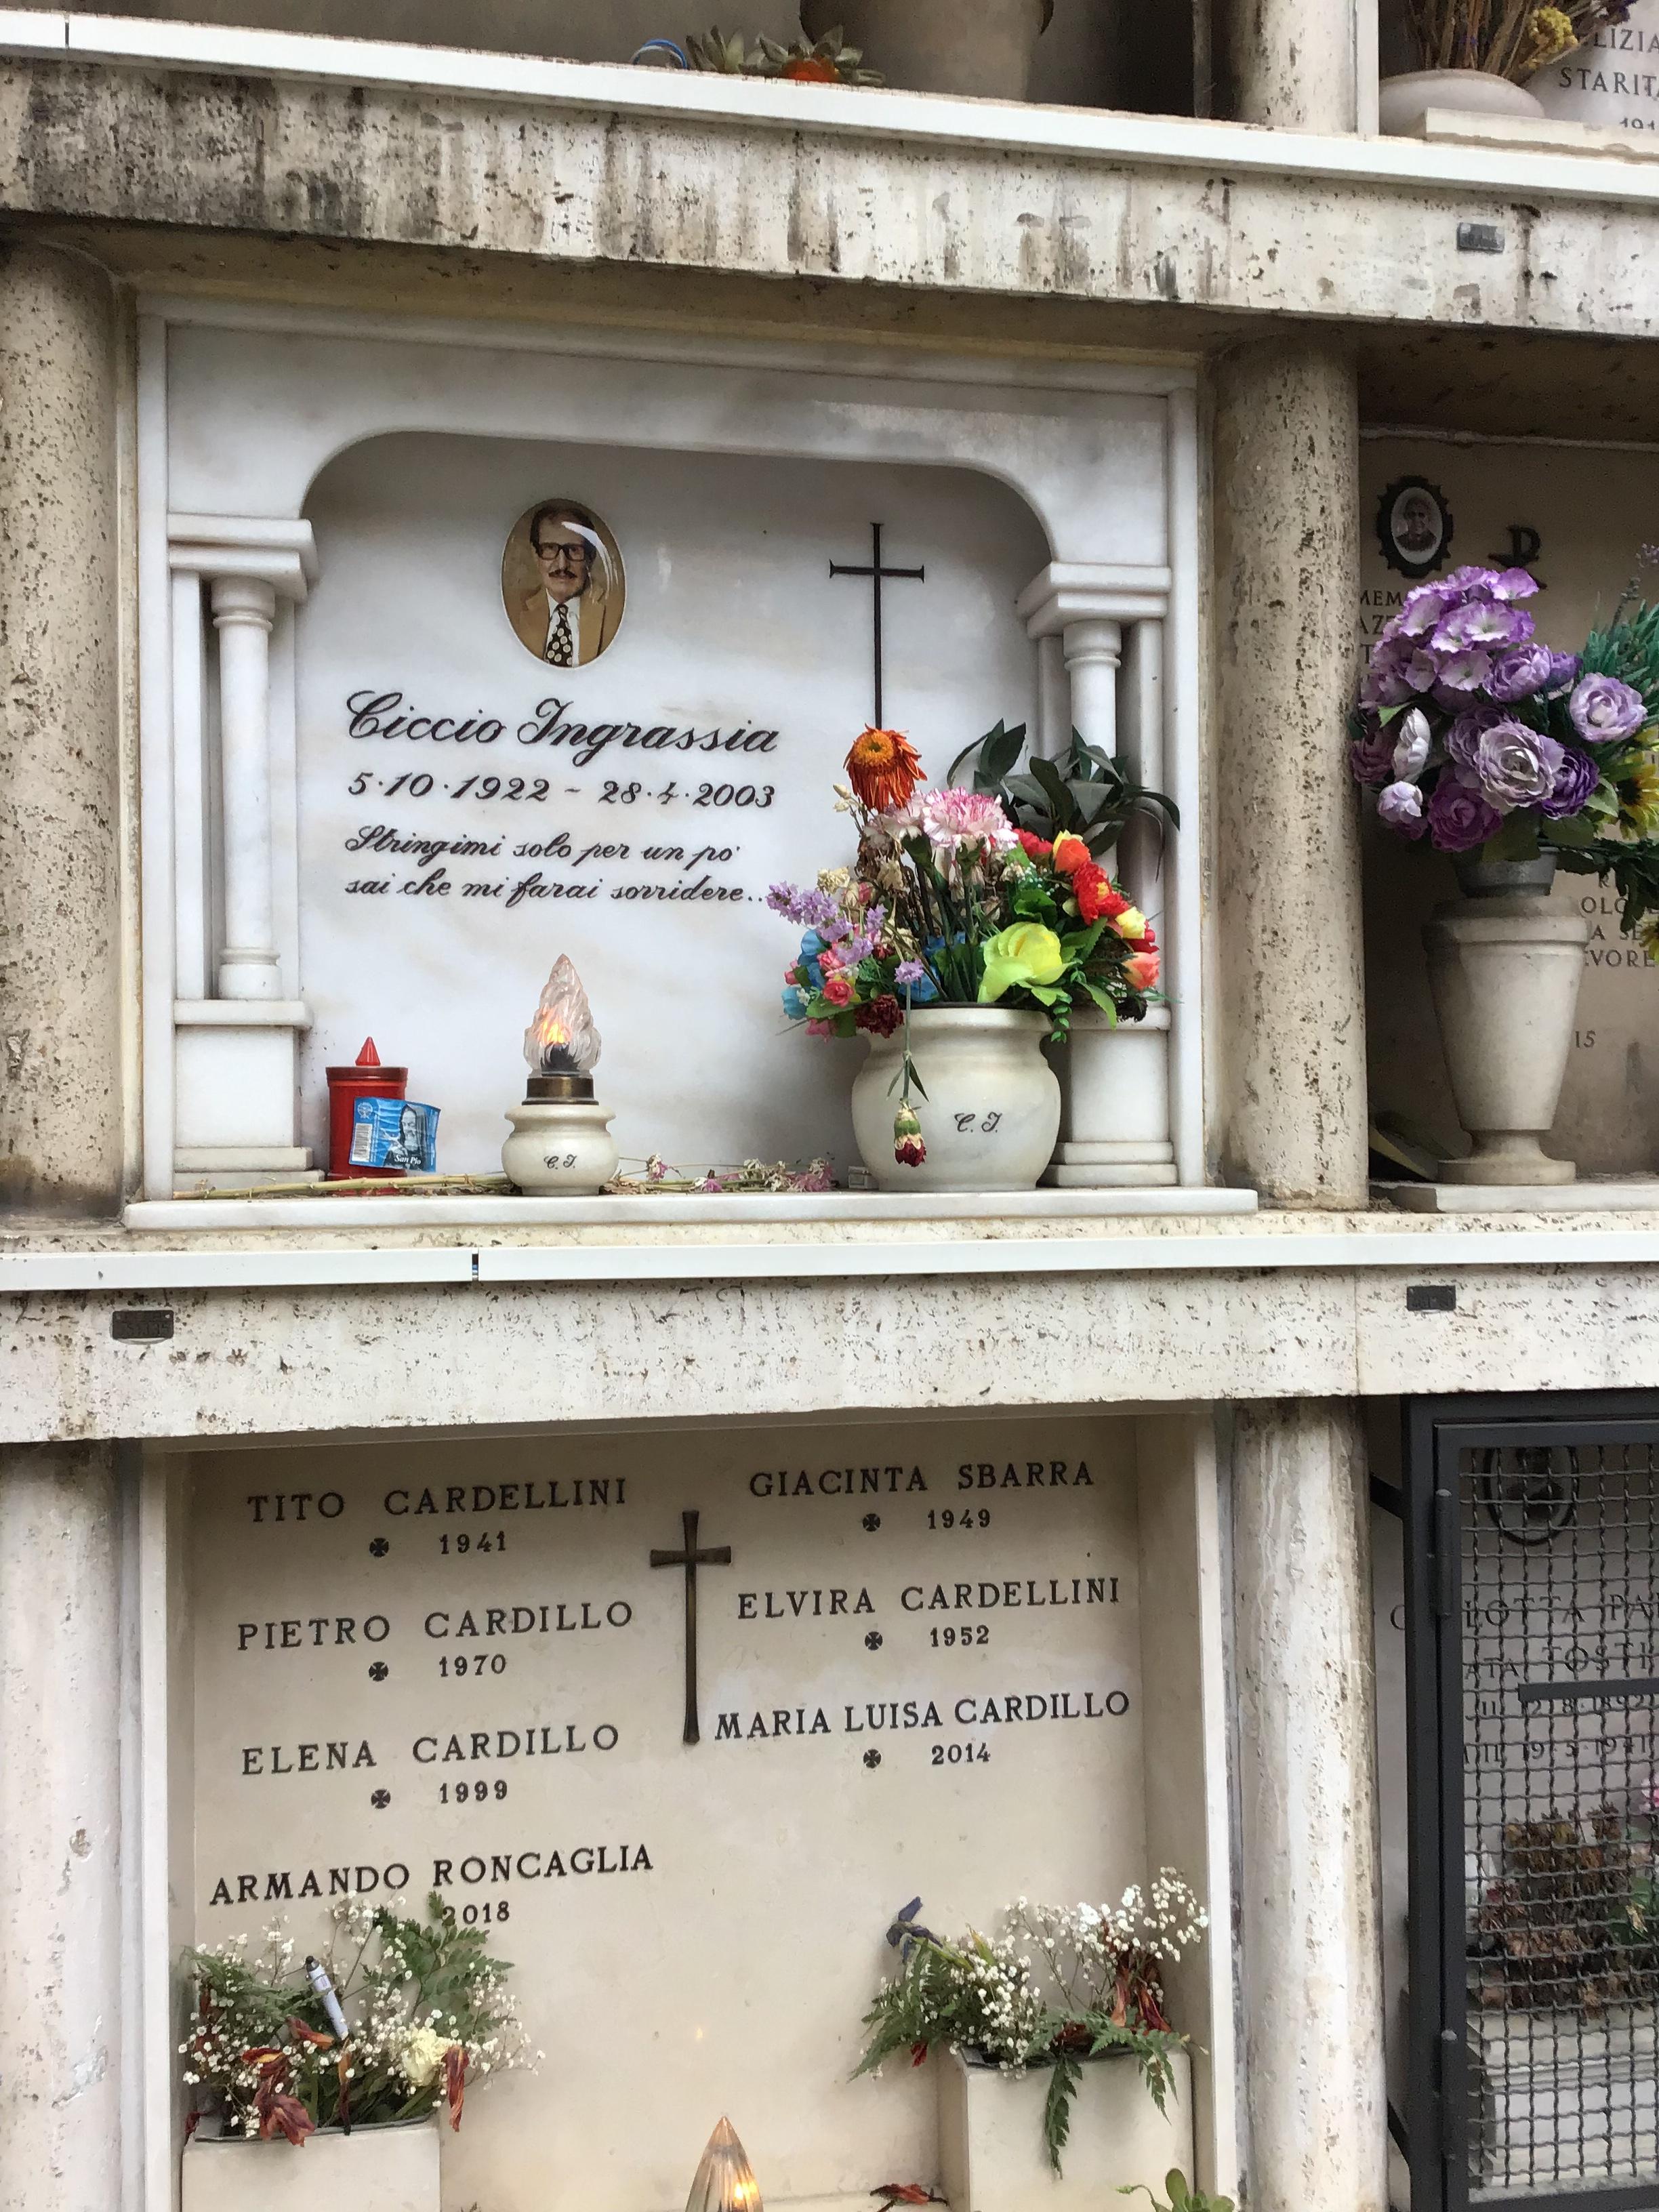 Ciccio Ingrassia - Tombe famose al cimitero del Verano